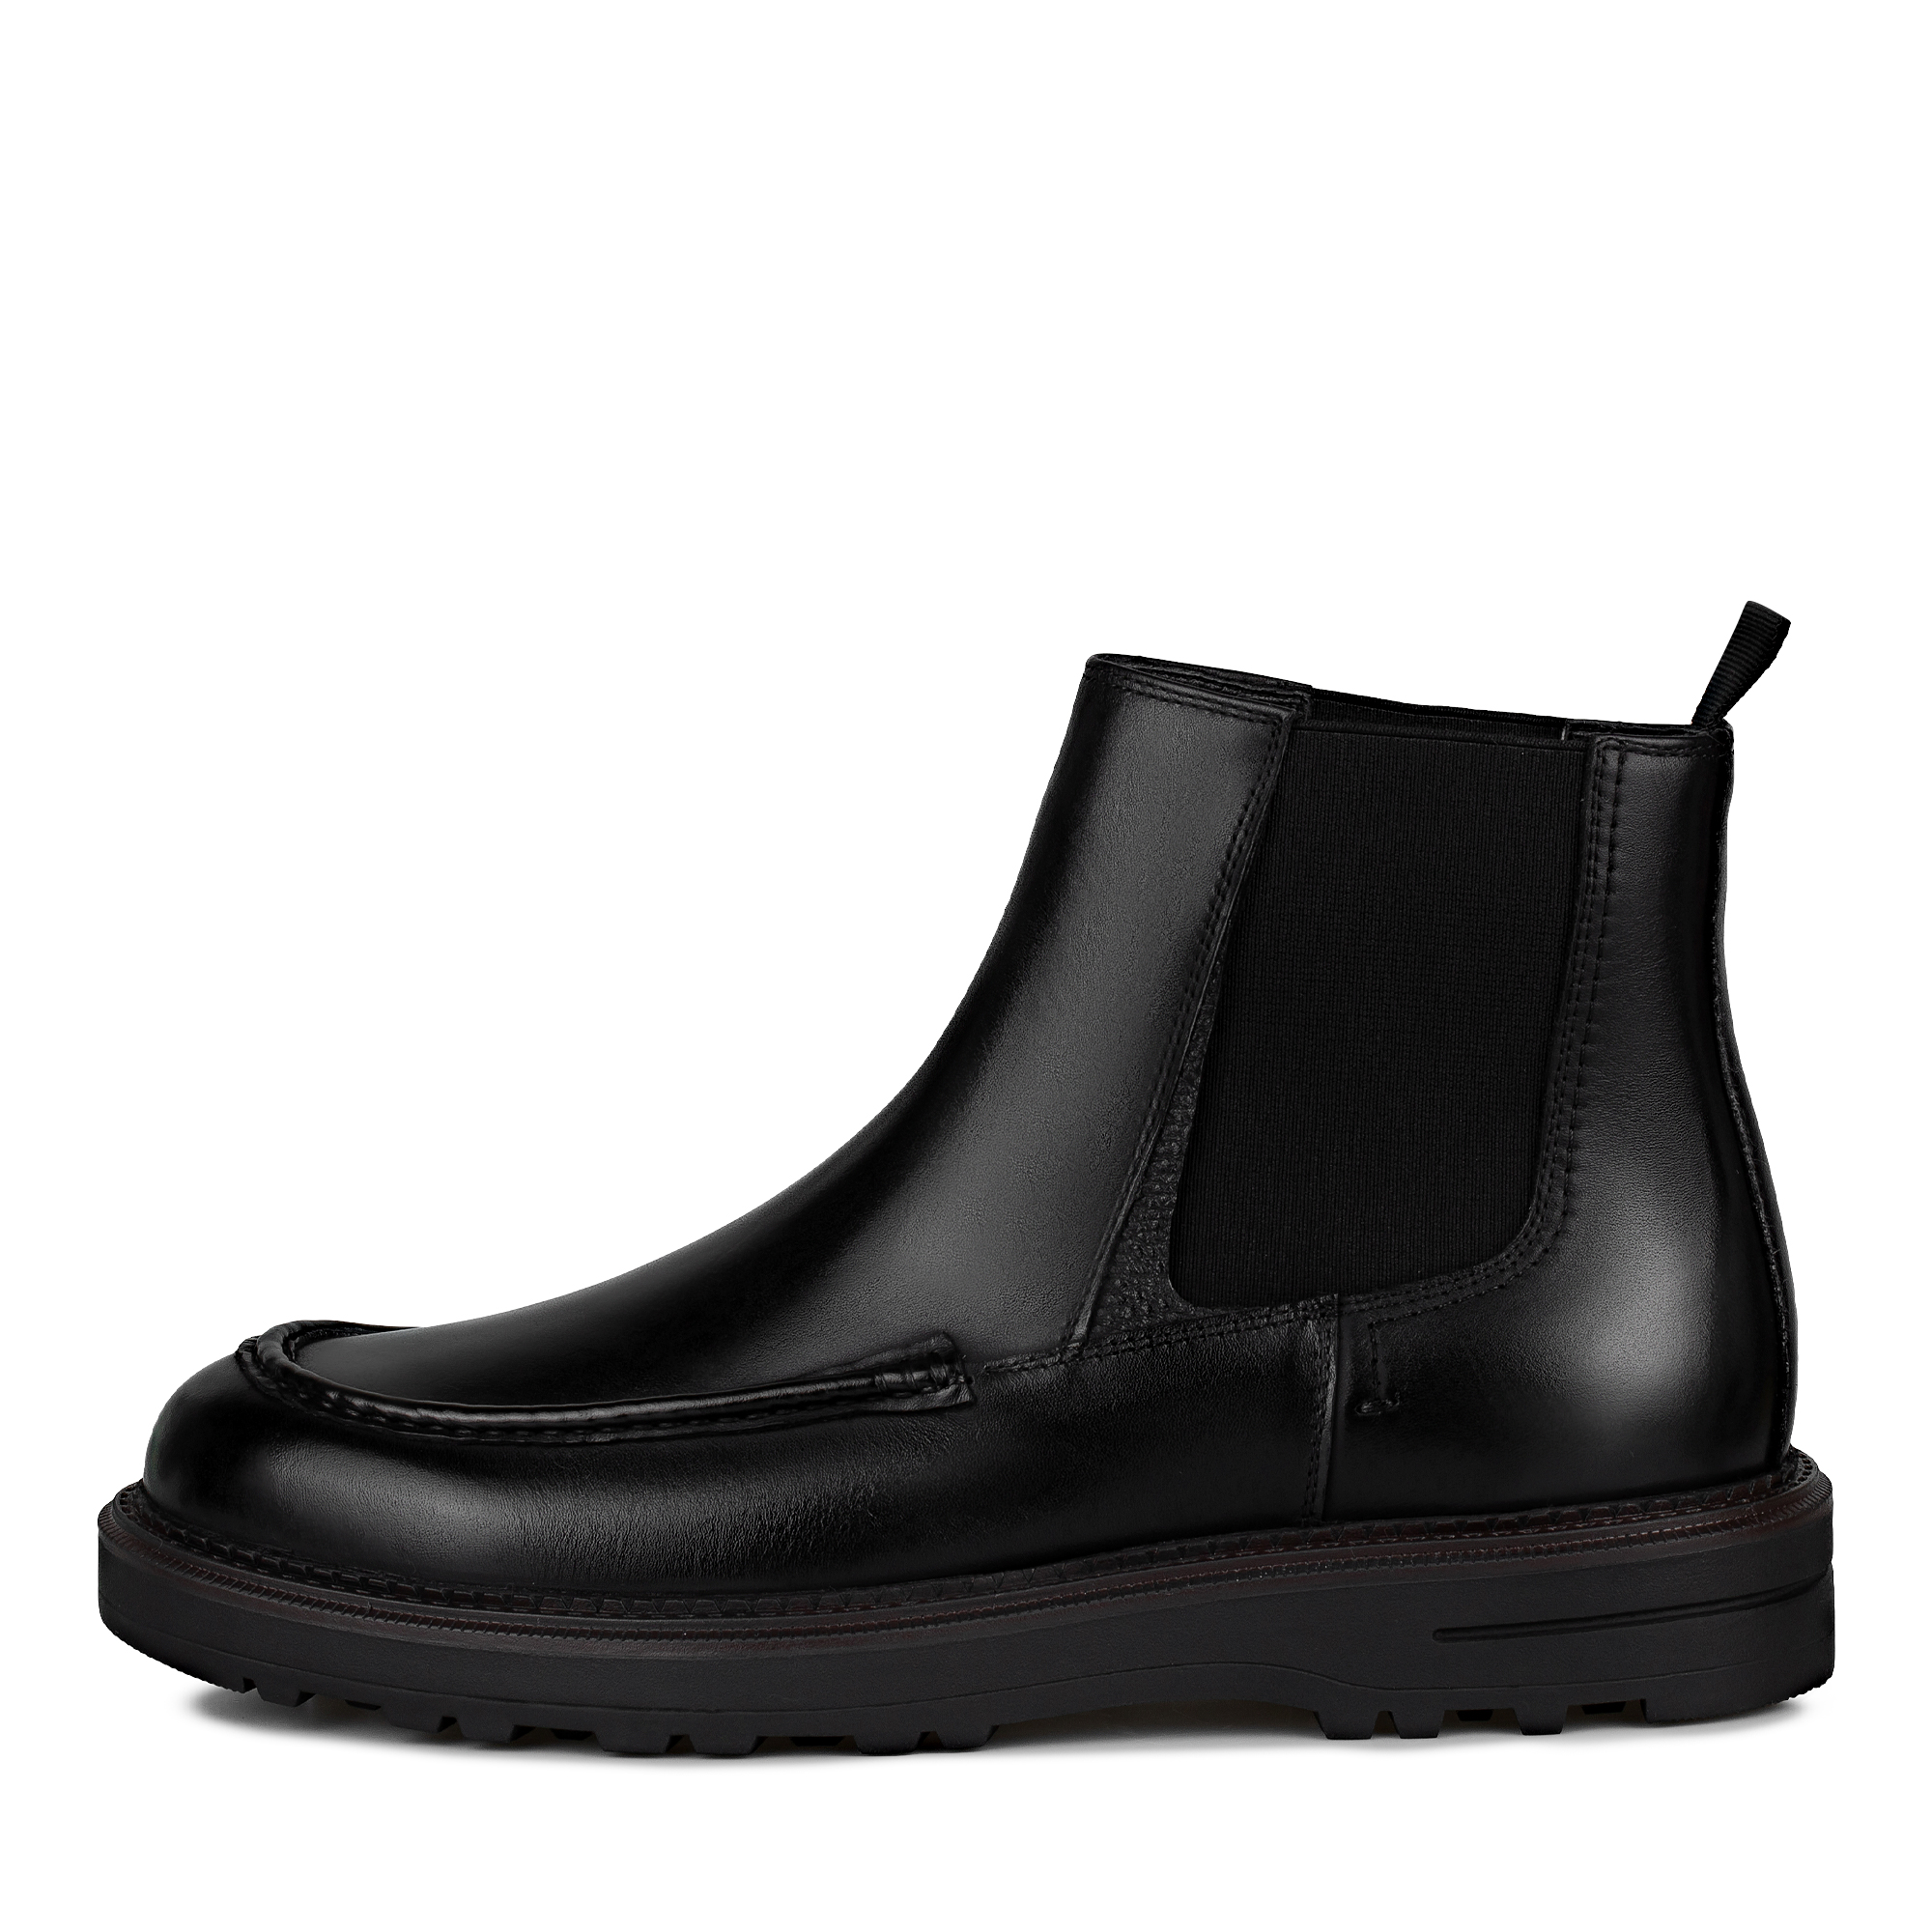 Ботинки Thomas Munz 280-3447B-2102, цвет черный, размер 40